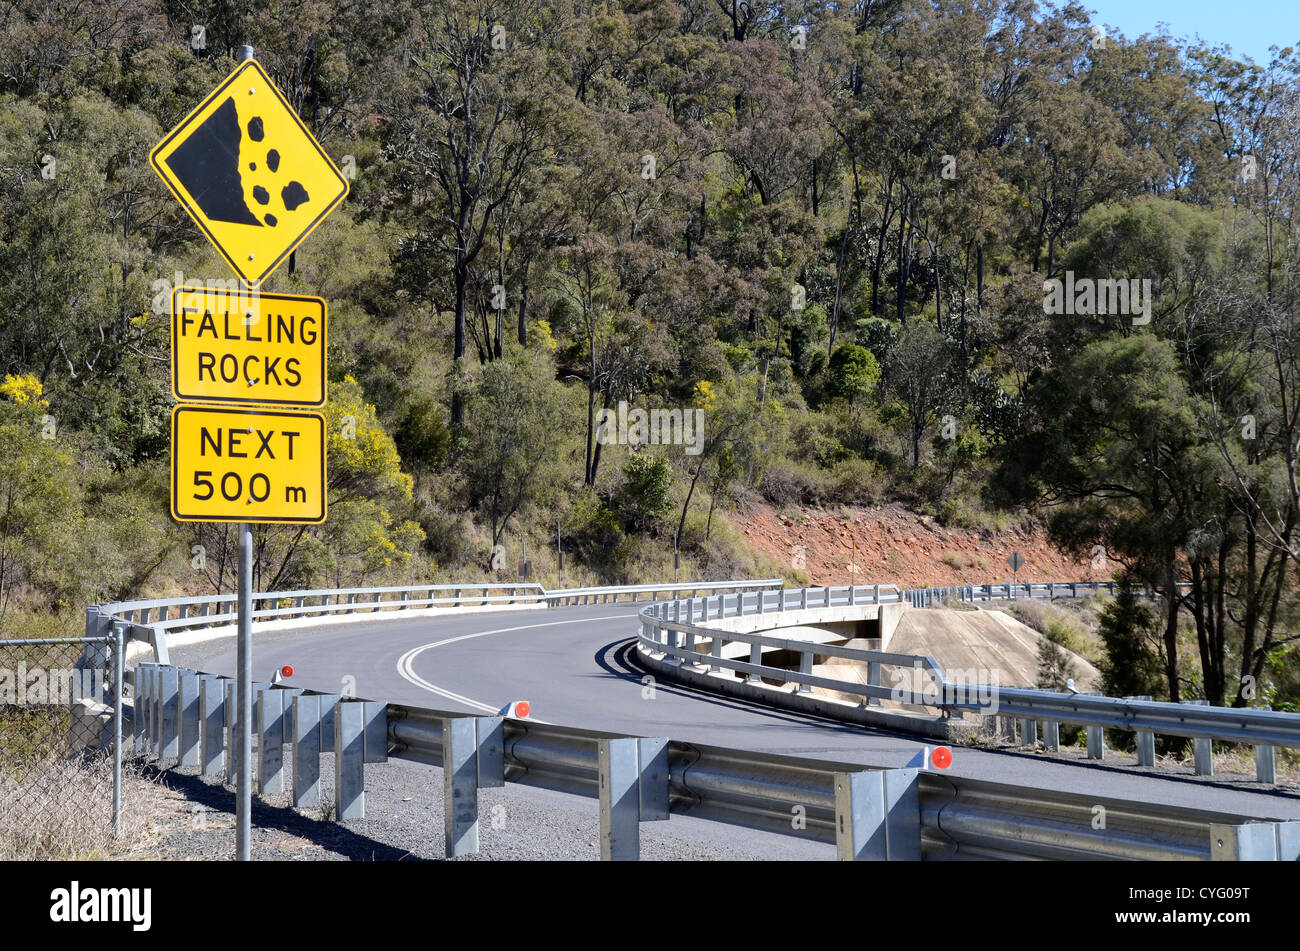 Les chutes de pierres route signe. Esk-Kilcoy Road Queensland Australie Banque D'Images